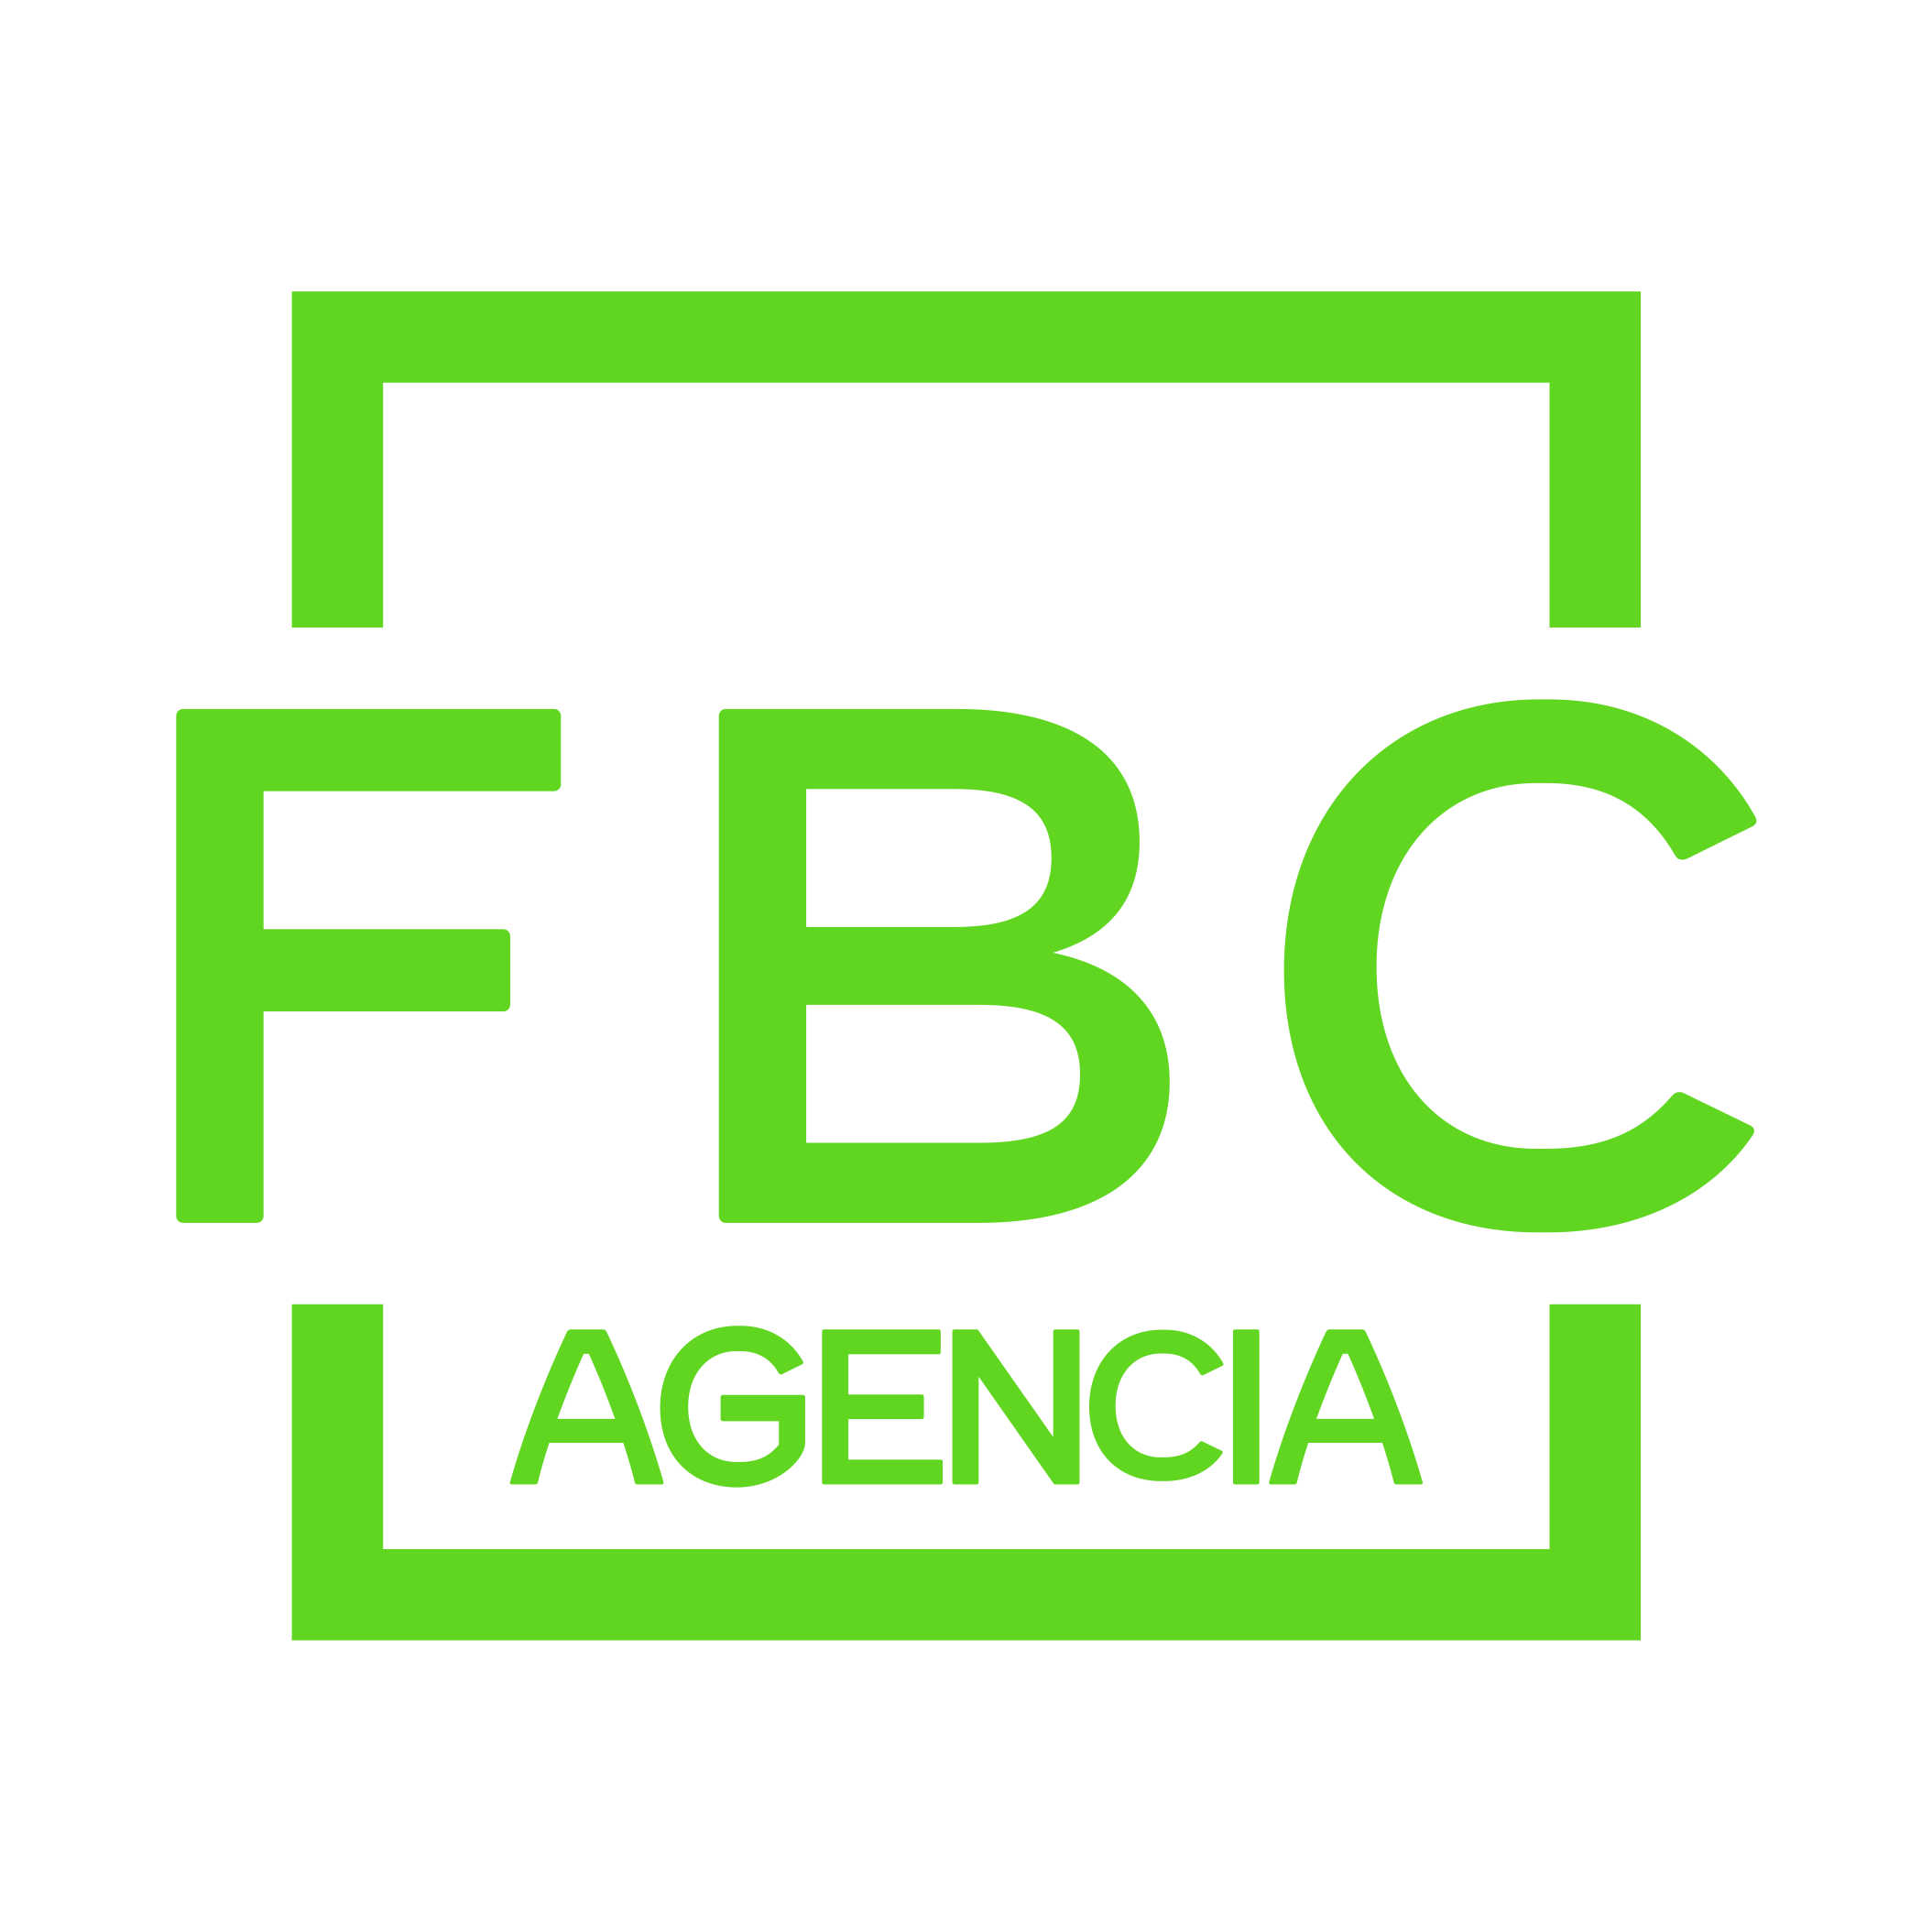 FBC AGENCIA - Potenciamos Marcas